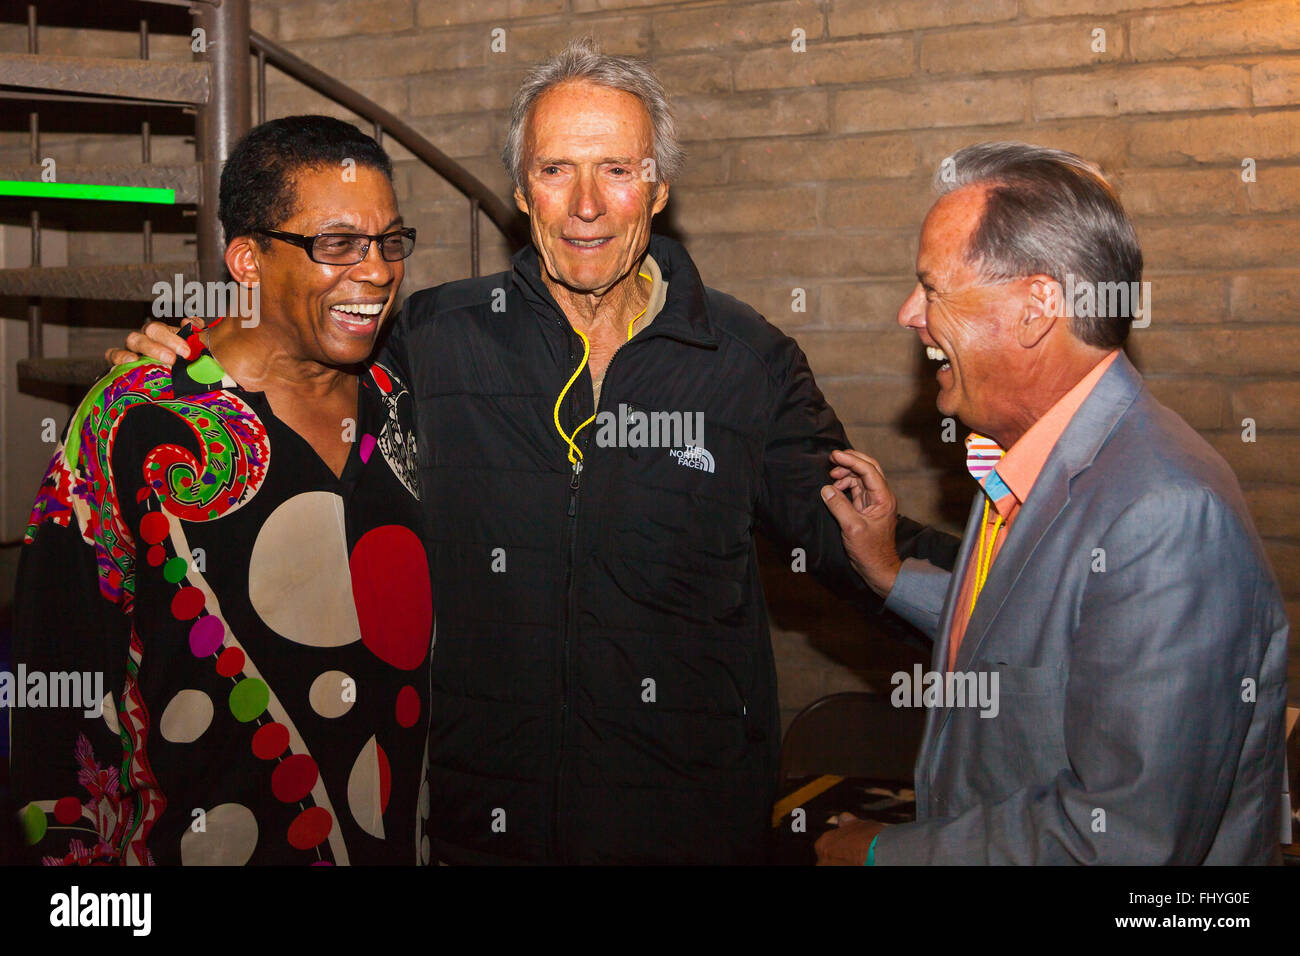 HERBIE HANCOCK backstage con Clint Eastwood y TIM Jackson en el Festival de Jazz de Monterey Foto de stock